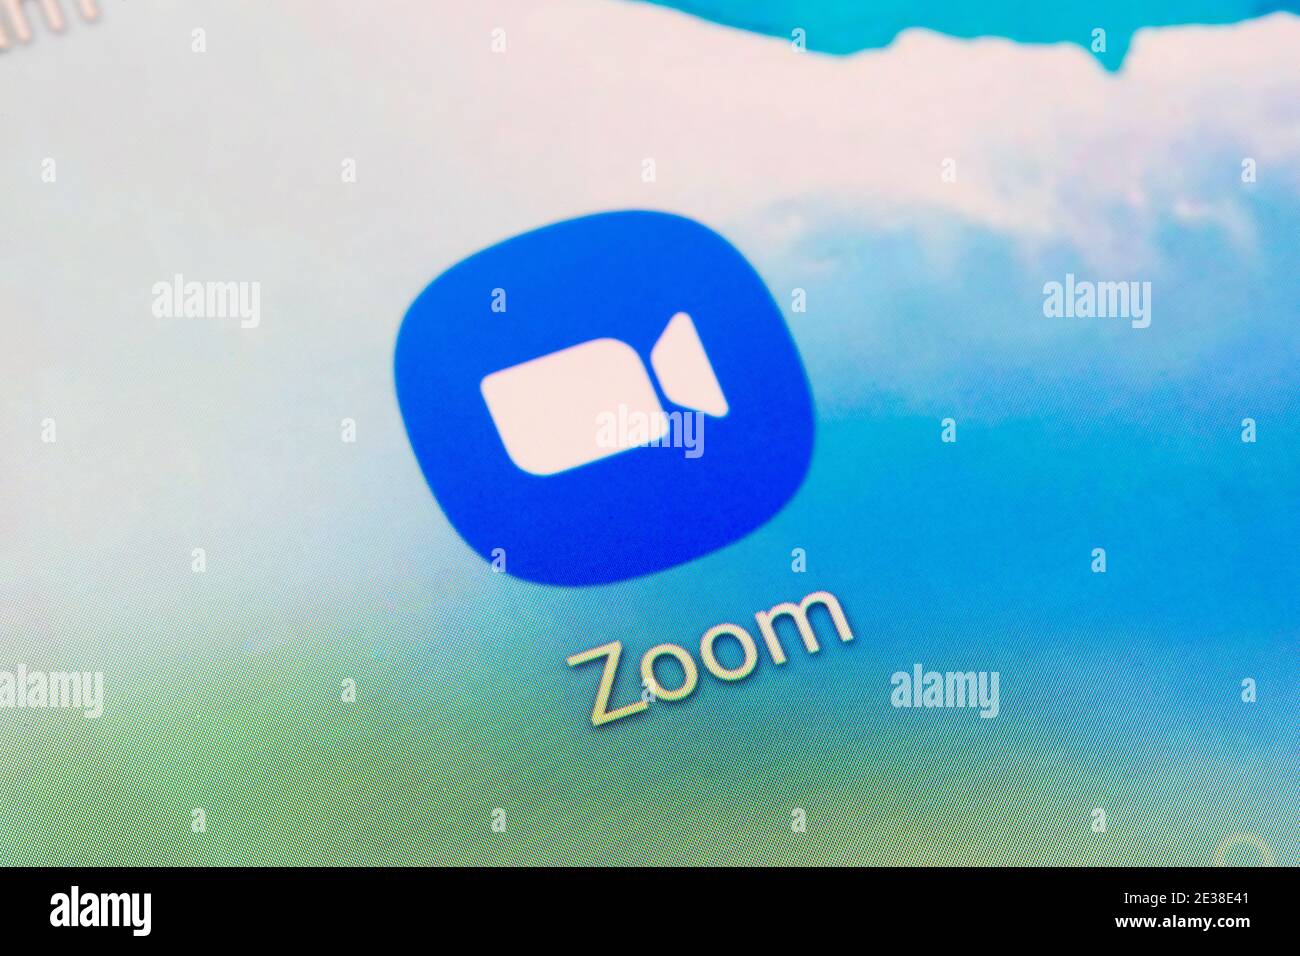 Gros plan du logo de l'application Zoom - A. Logiciel de vidéoconférence développé par Zoom Video Communications Banque D'Images